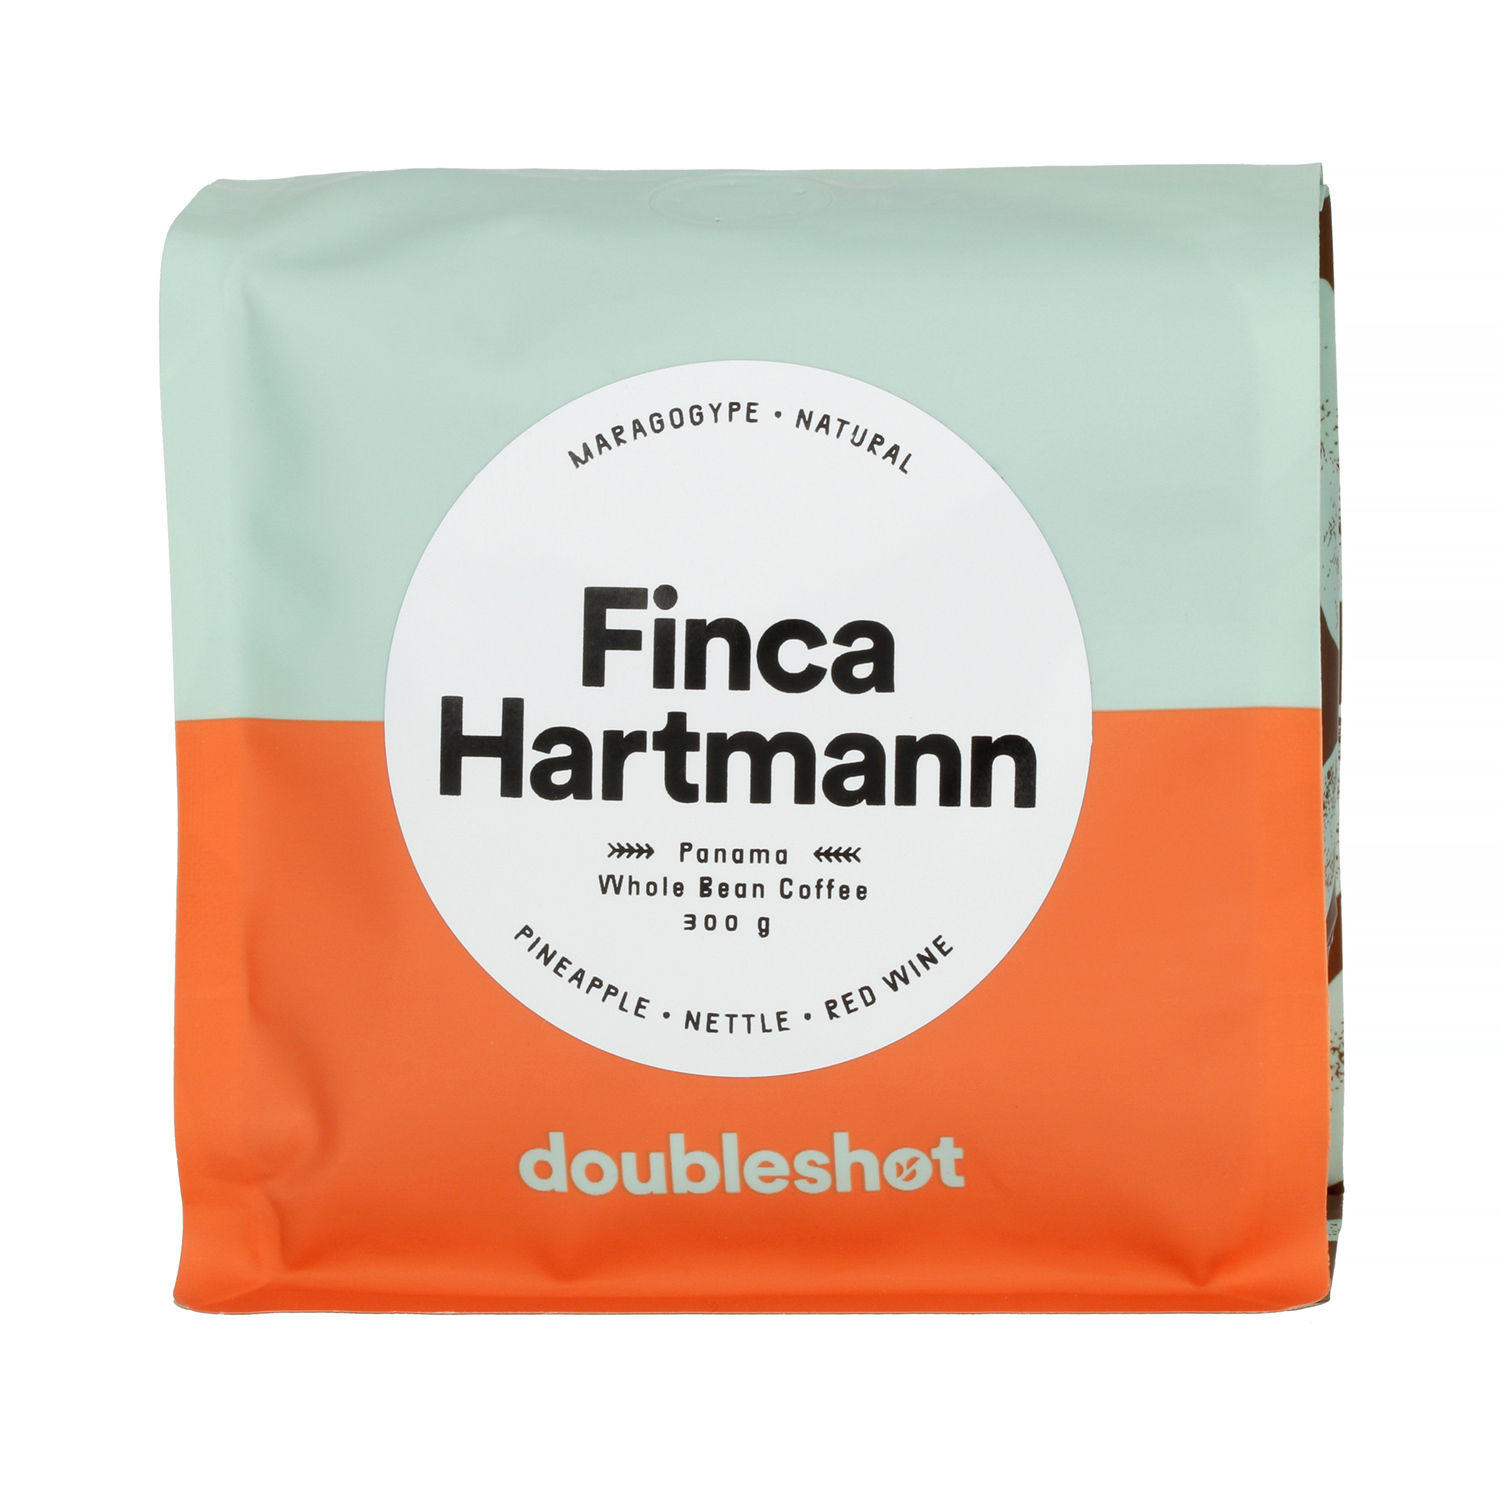 Doubleshot - Panama Finca Hartmann Maragogype Natural Filter 300g